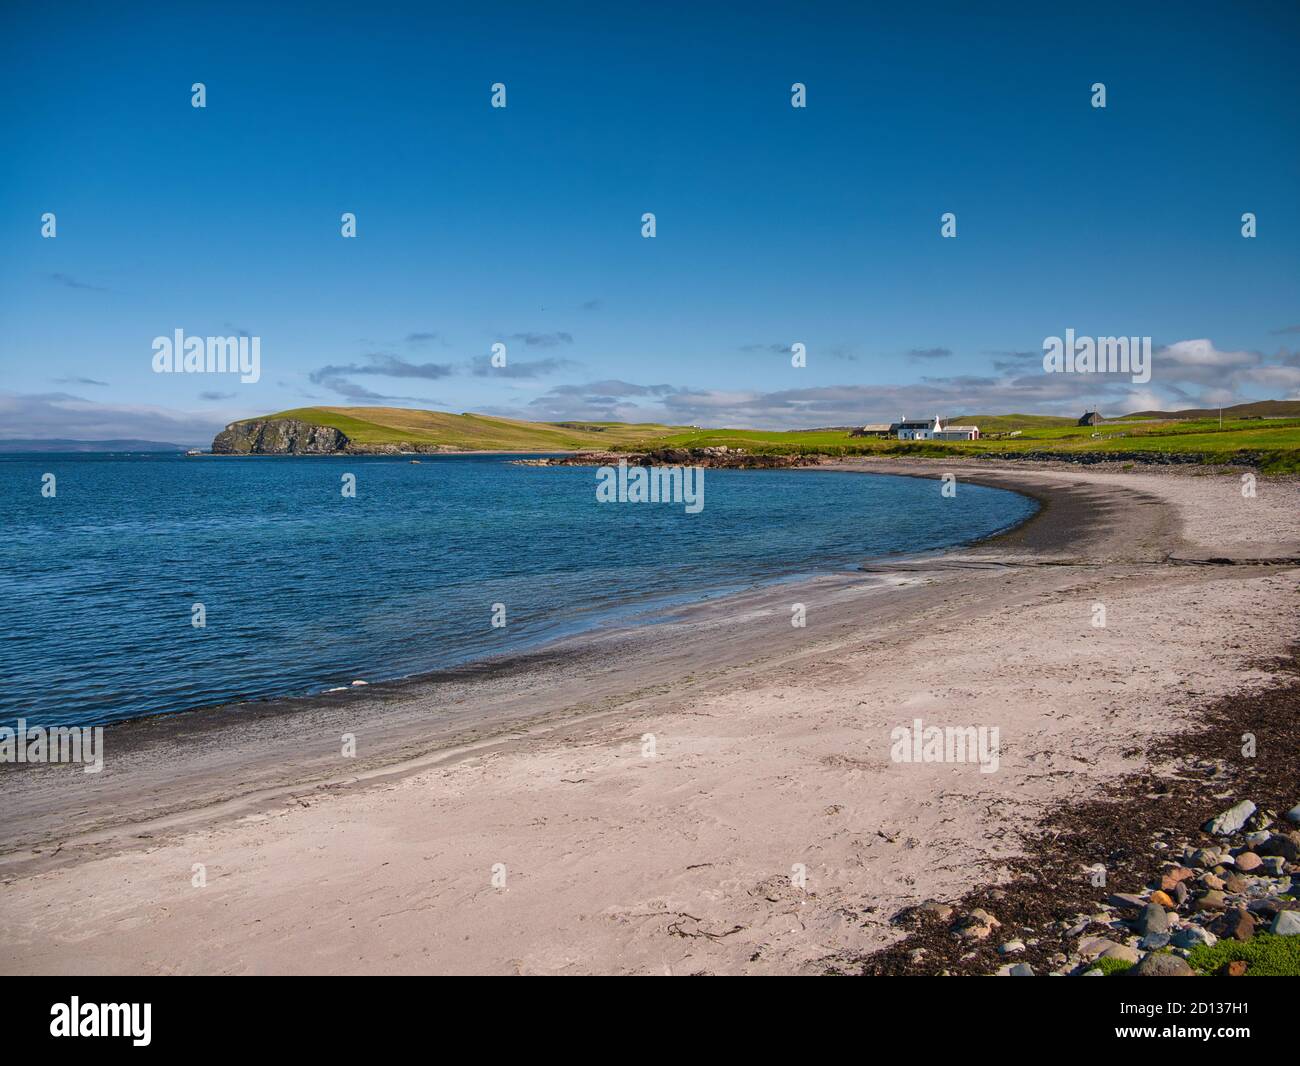 Con il promontorio del Neap di Norby in lontananza, la spiaggia di sabbia a Melby vicino a Sandness sulla costa occidentale della terraferma, Shetland, Scozia, Regno Unito Foto Stock